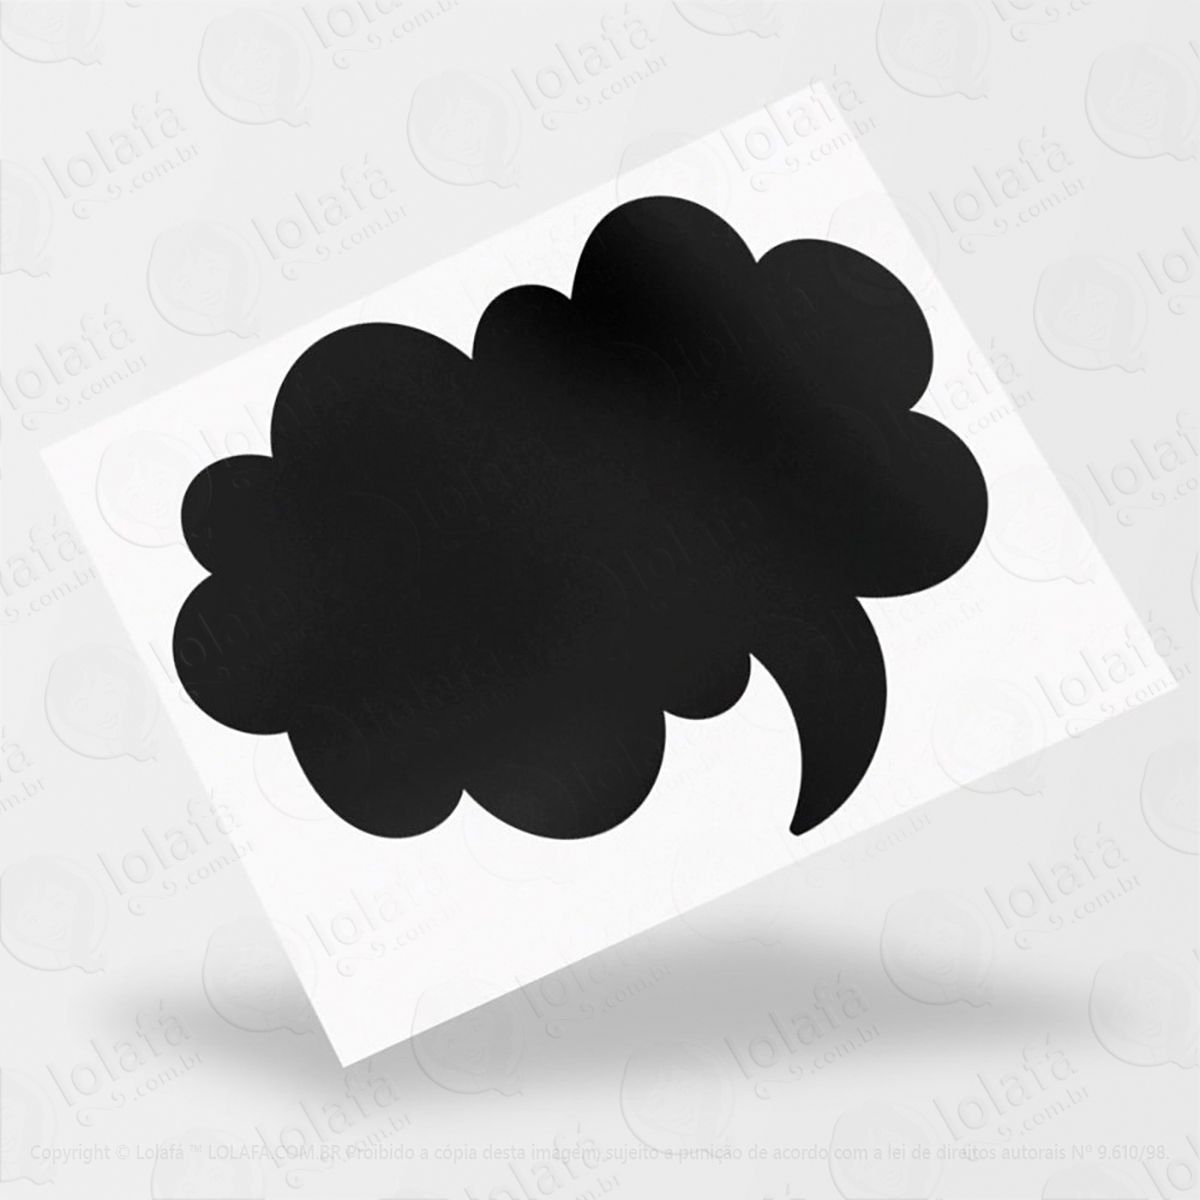 balão adesivo lousa quadro negro de parede para escrever com giz - mod:169